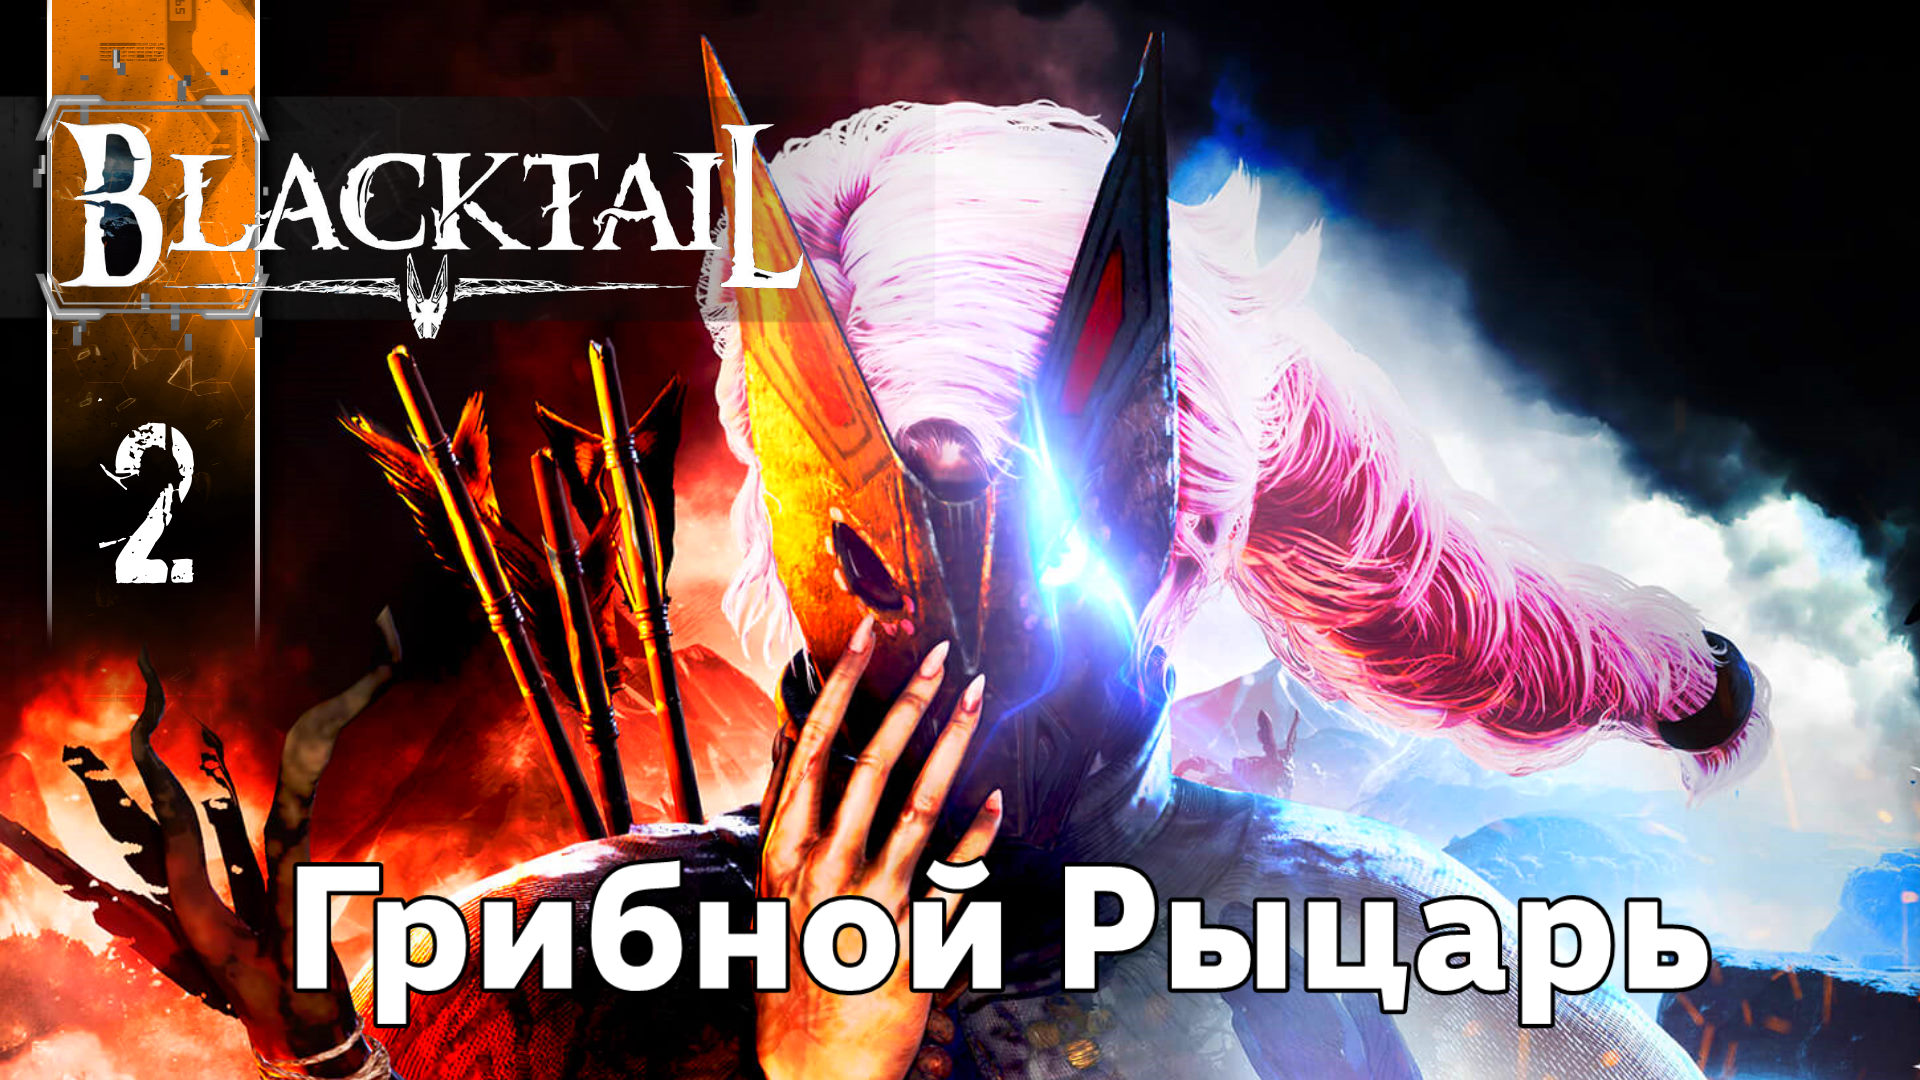 BlackTail (Грибной Рыцарь) Полное Прохождение игры (Блэктейле) на Русском Геймплей Обзор